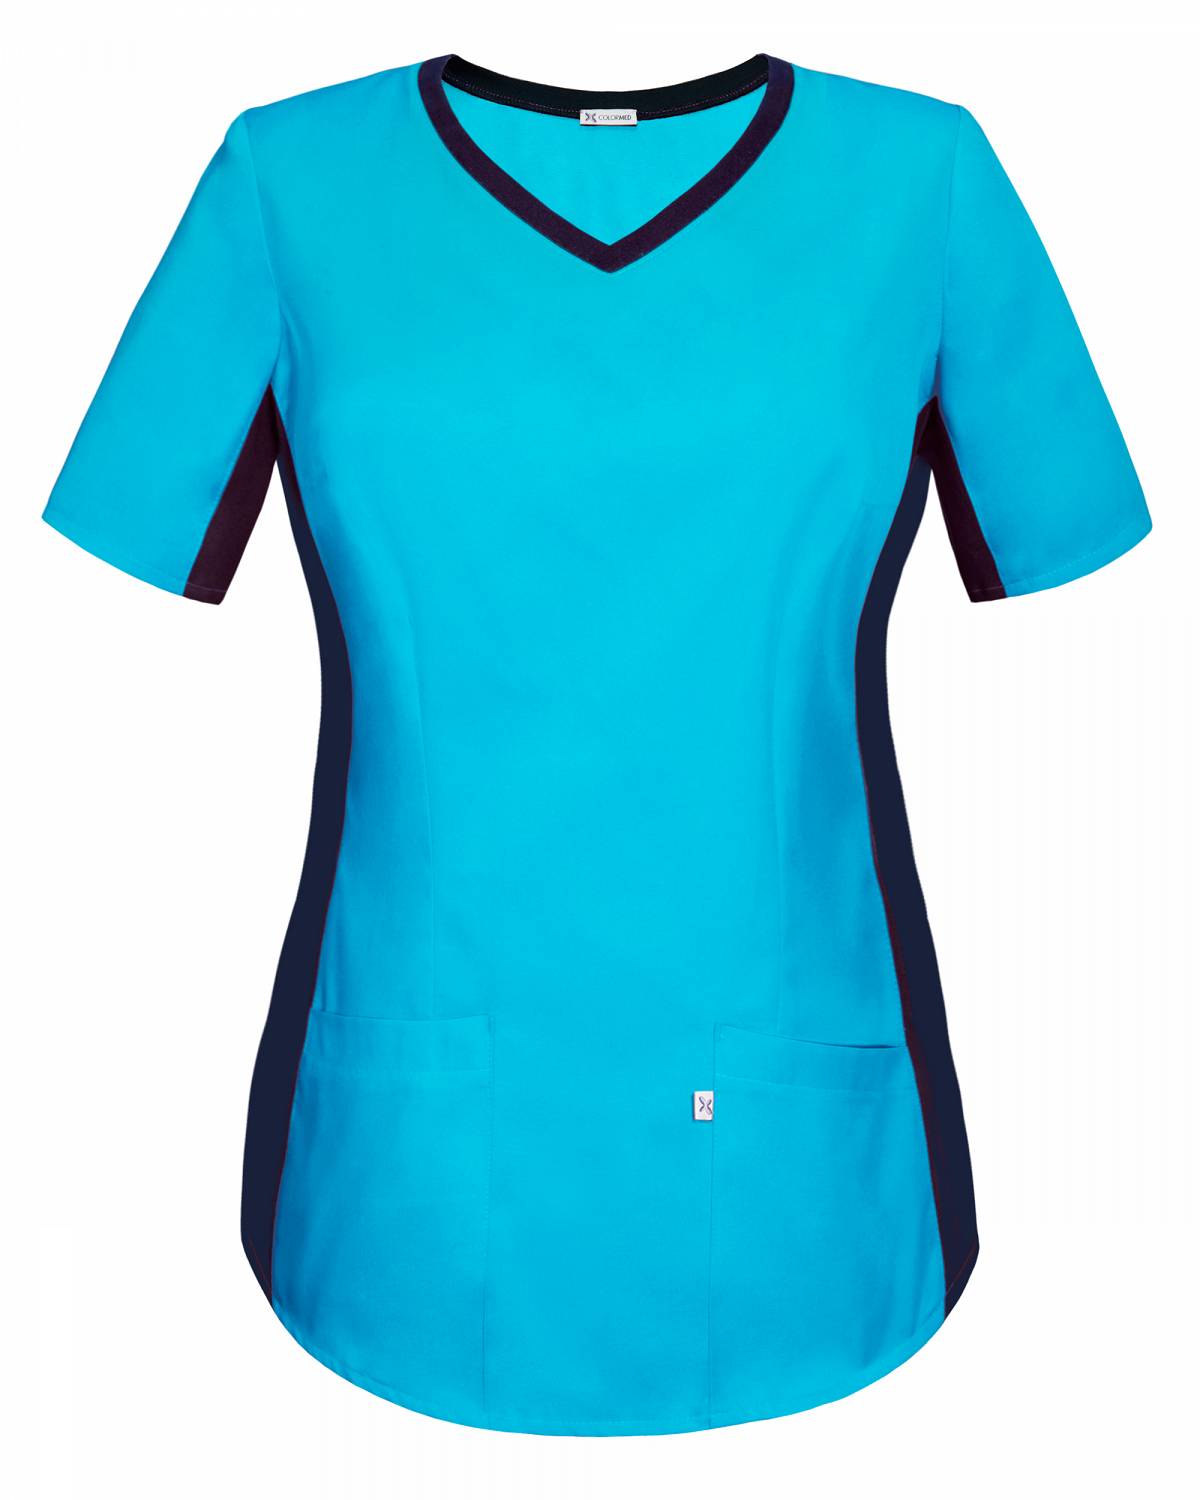 Bluza medyczna turkusowa z elastycznym ściągaczem w boku (BE1-T)